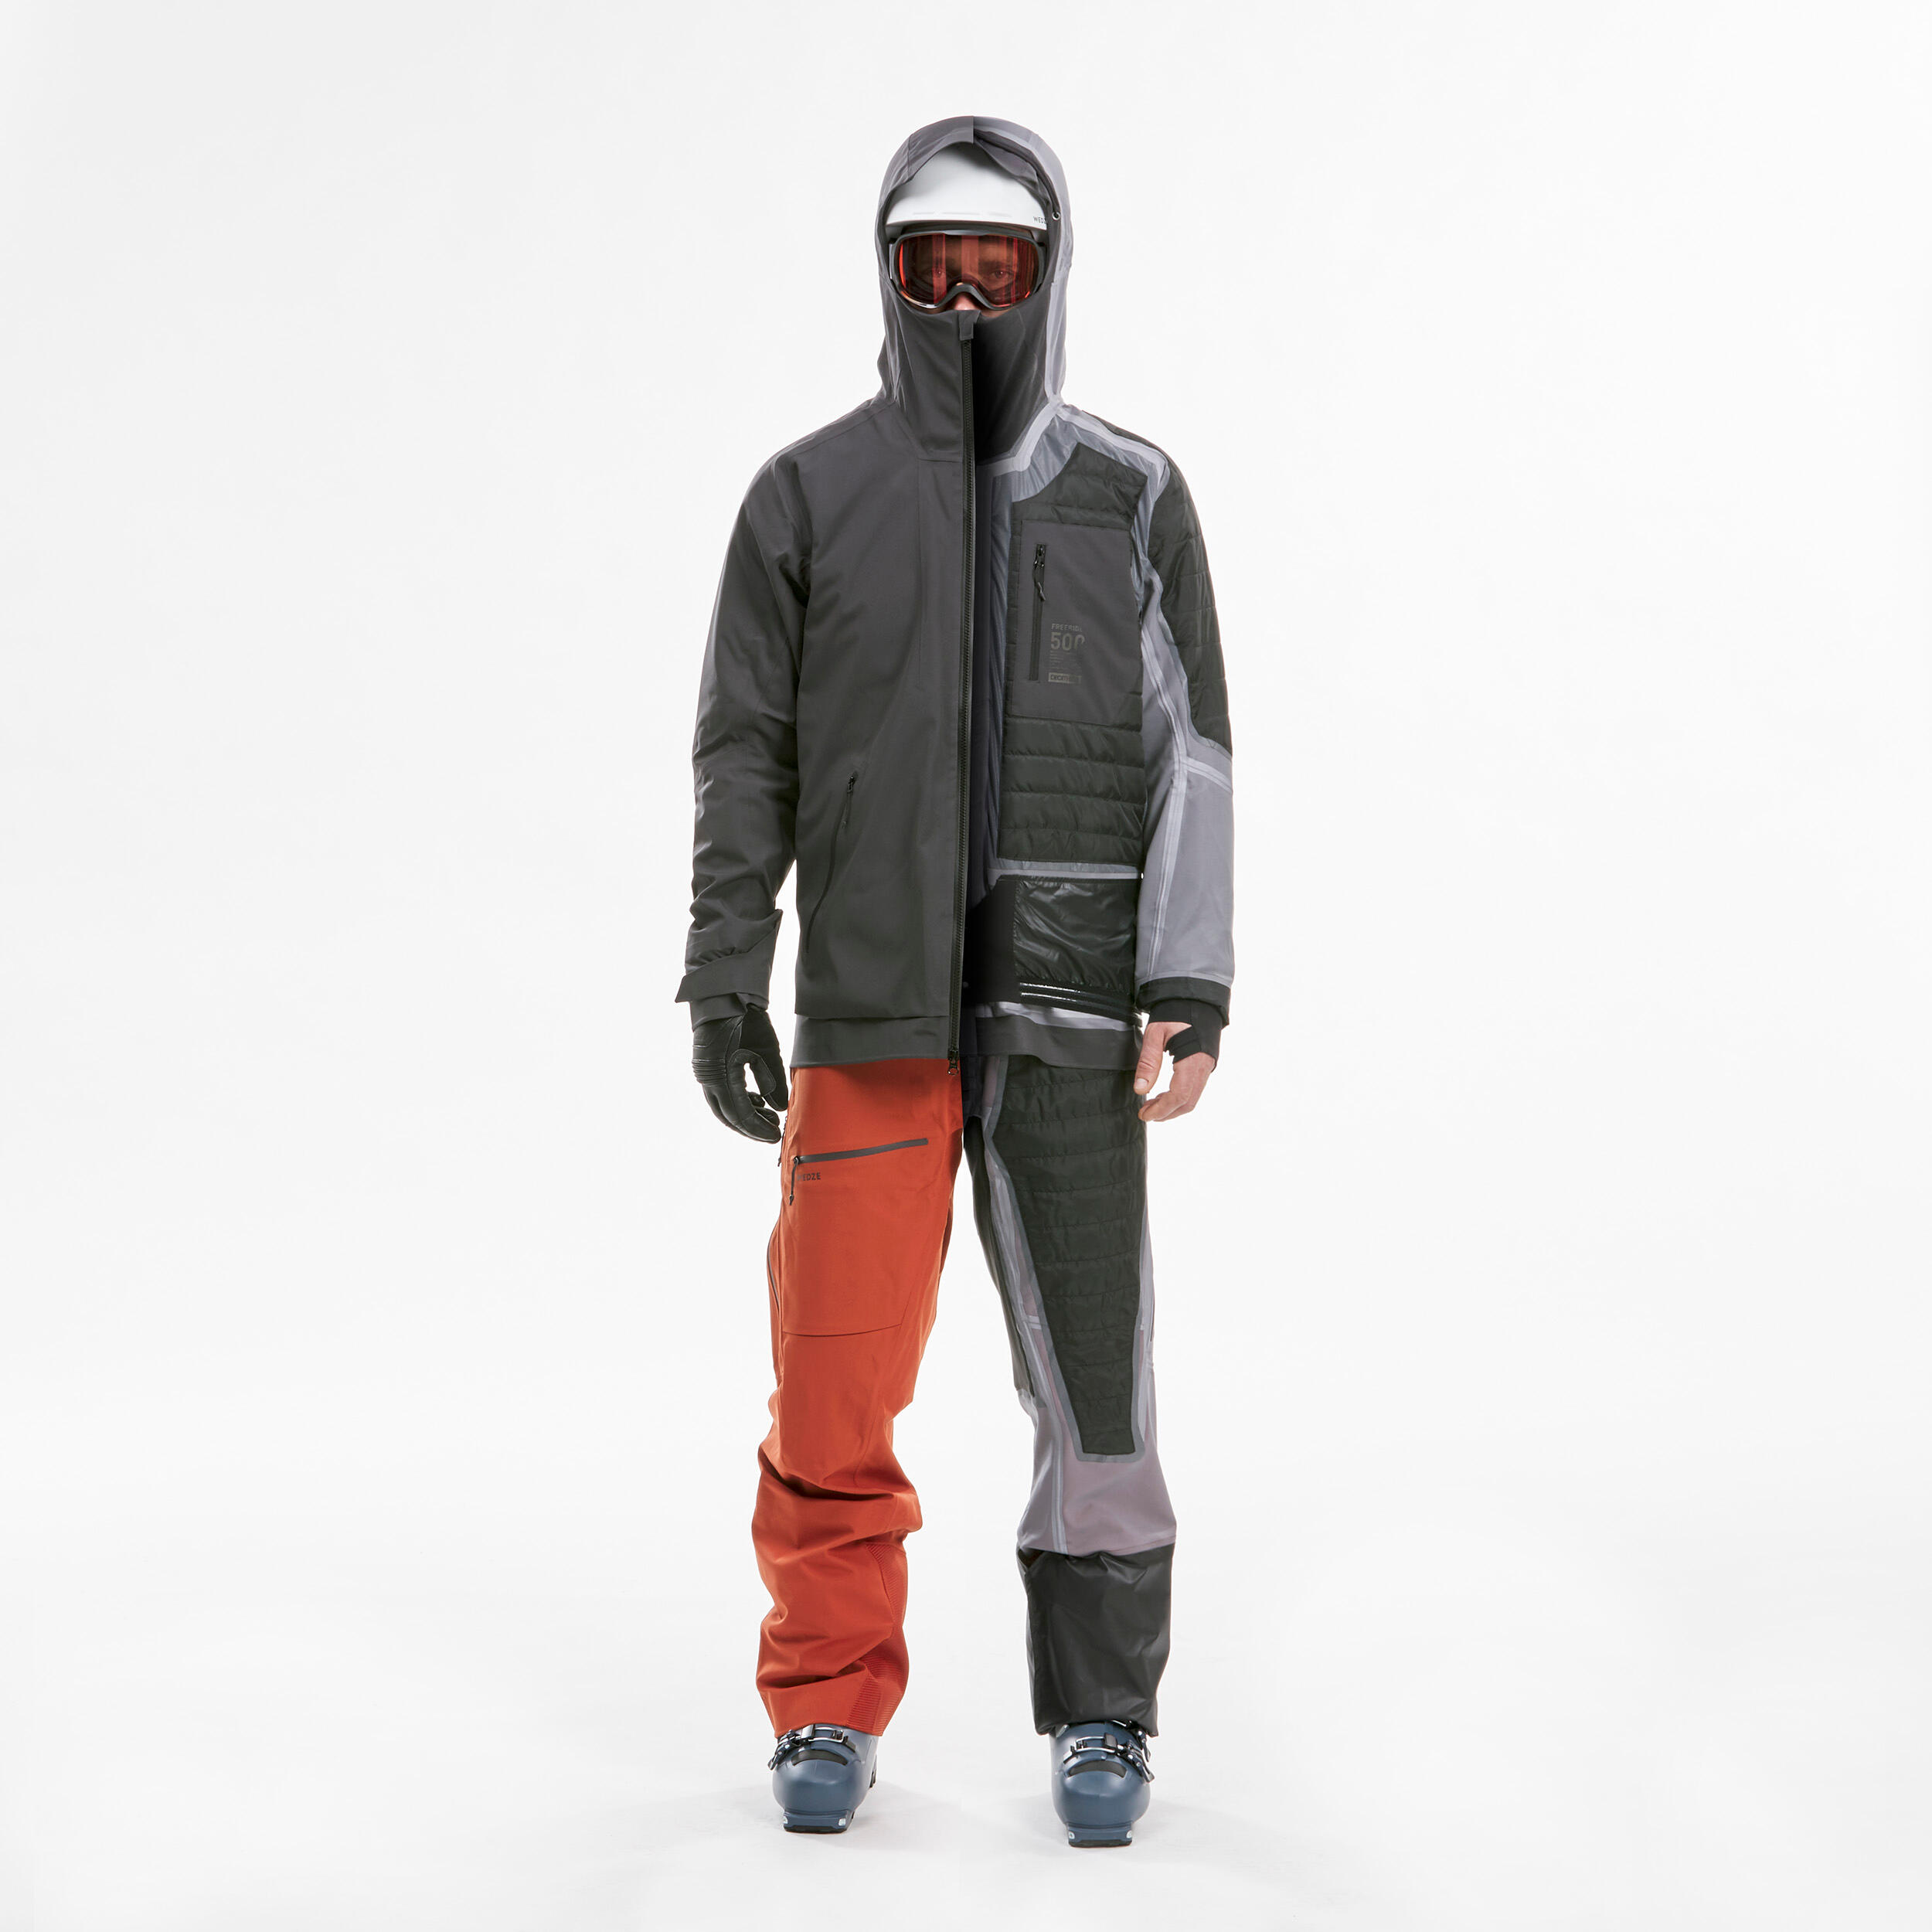 Manteau de ski homme – FR 500 gris - WEDZE